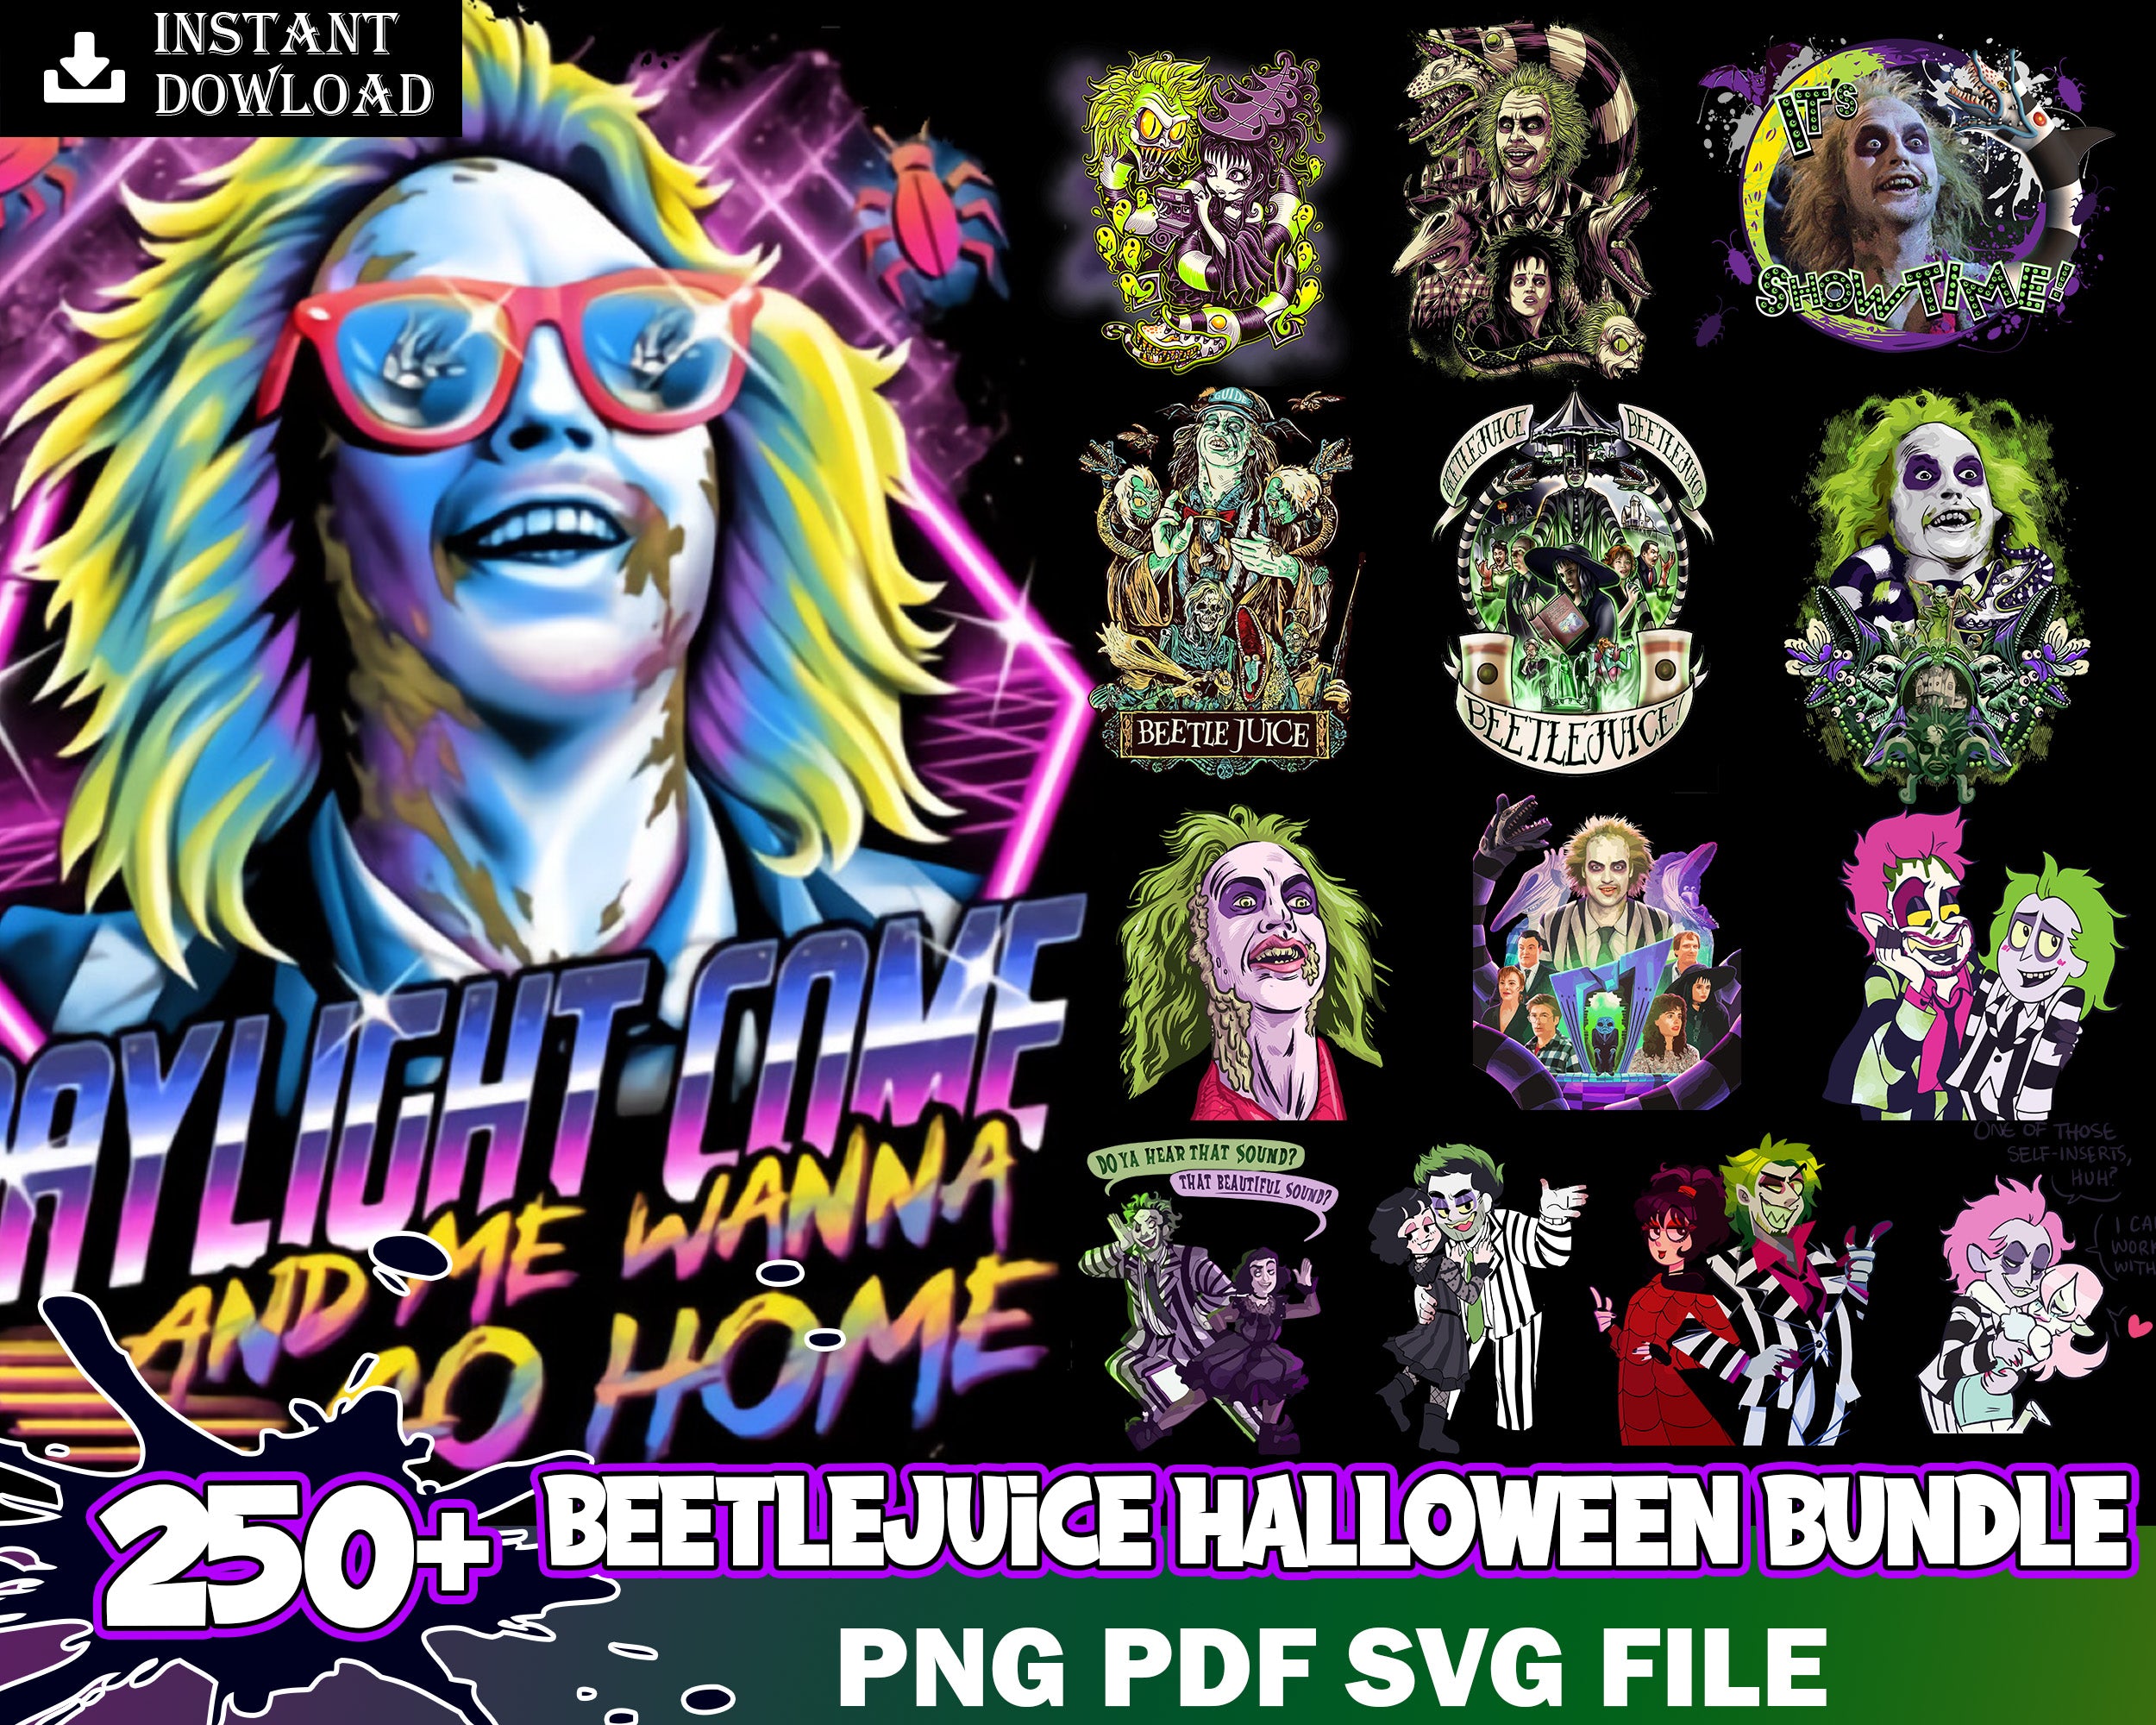 250+ Beetlejiuce bundle svg, png, eps, dxf, Halloween svg images, Digital file, Digital download.